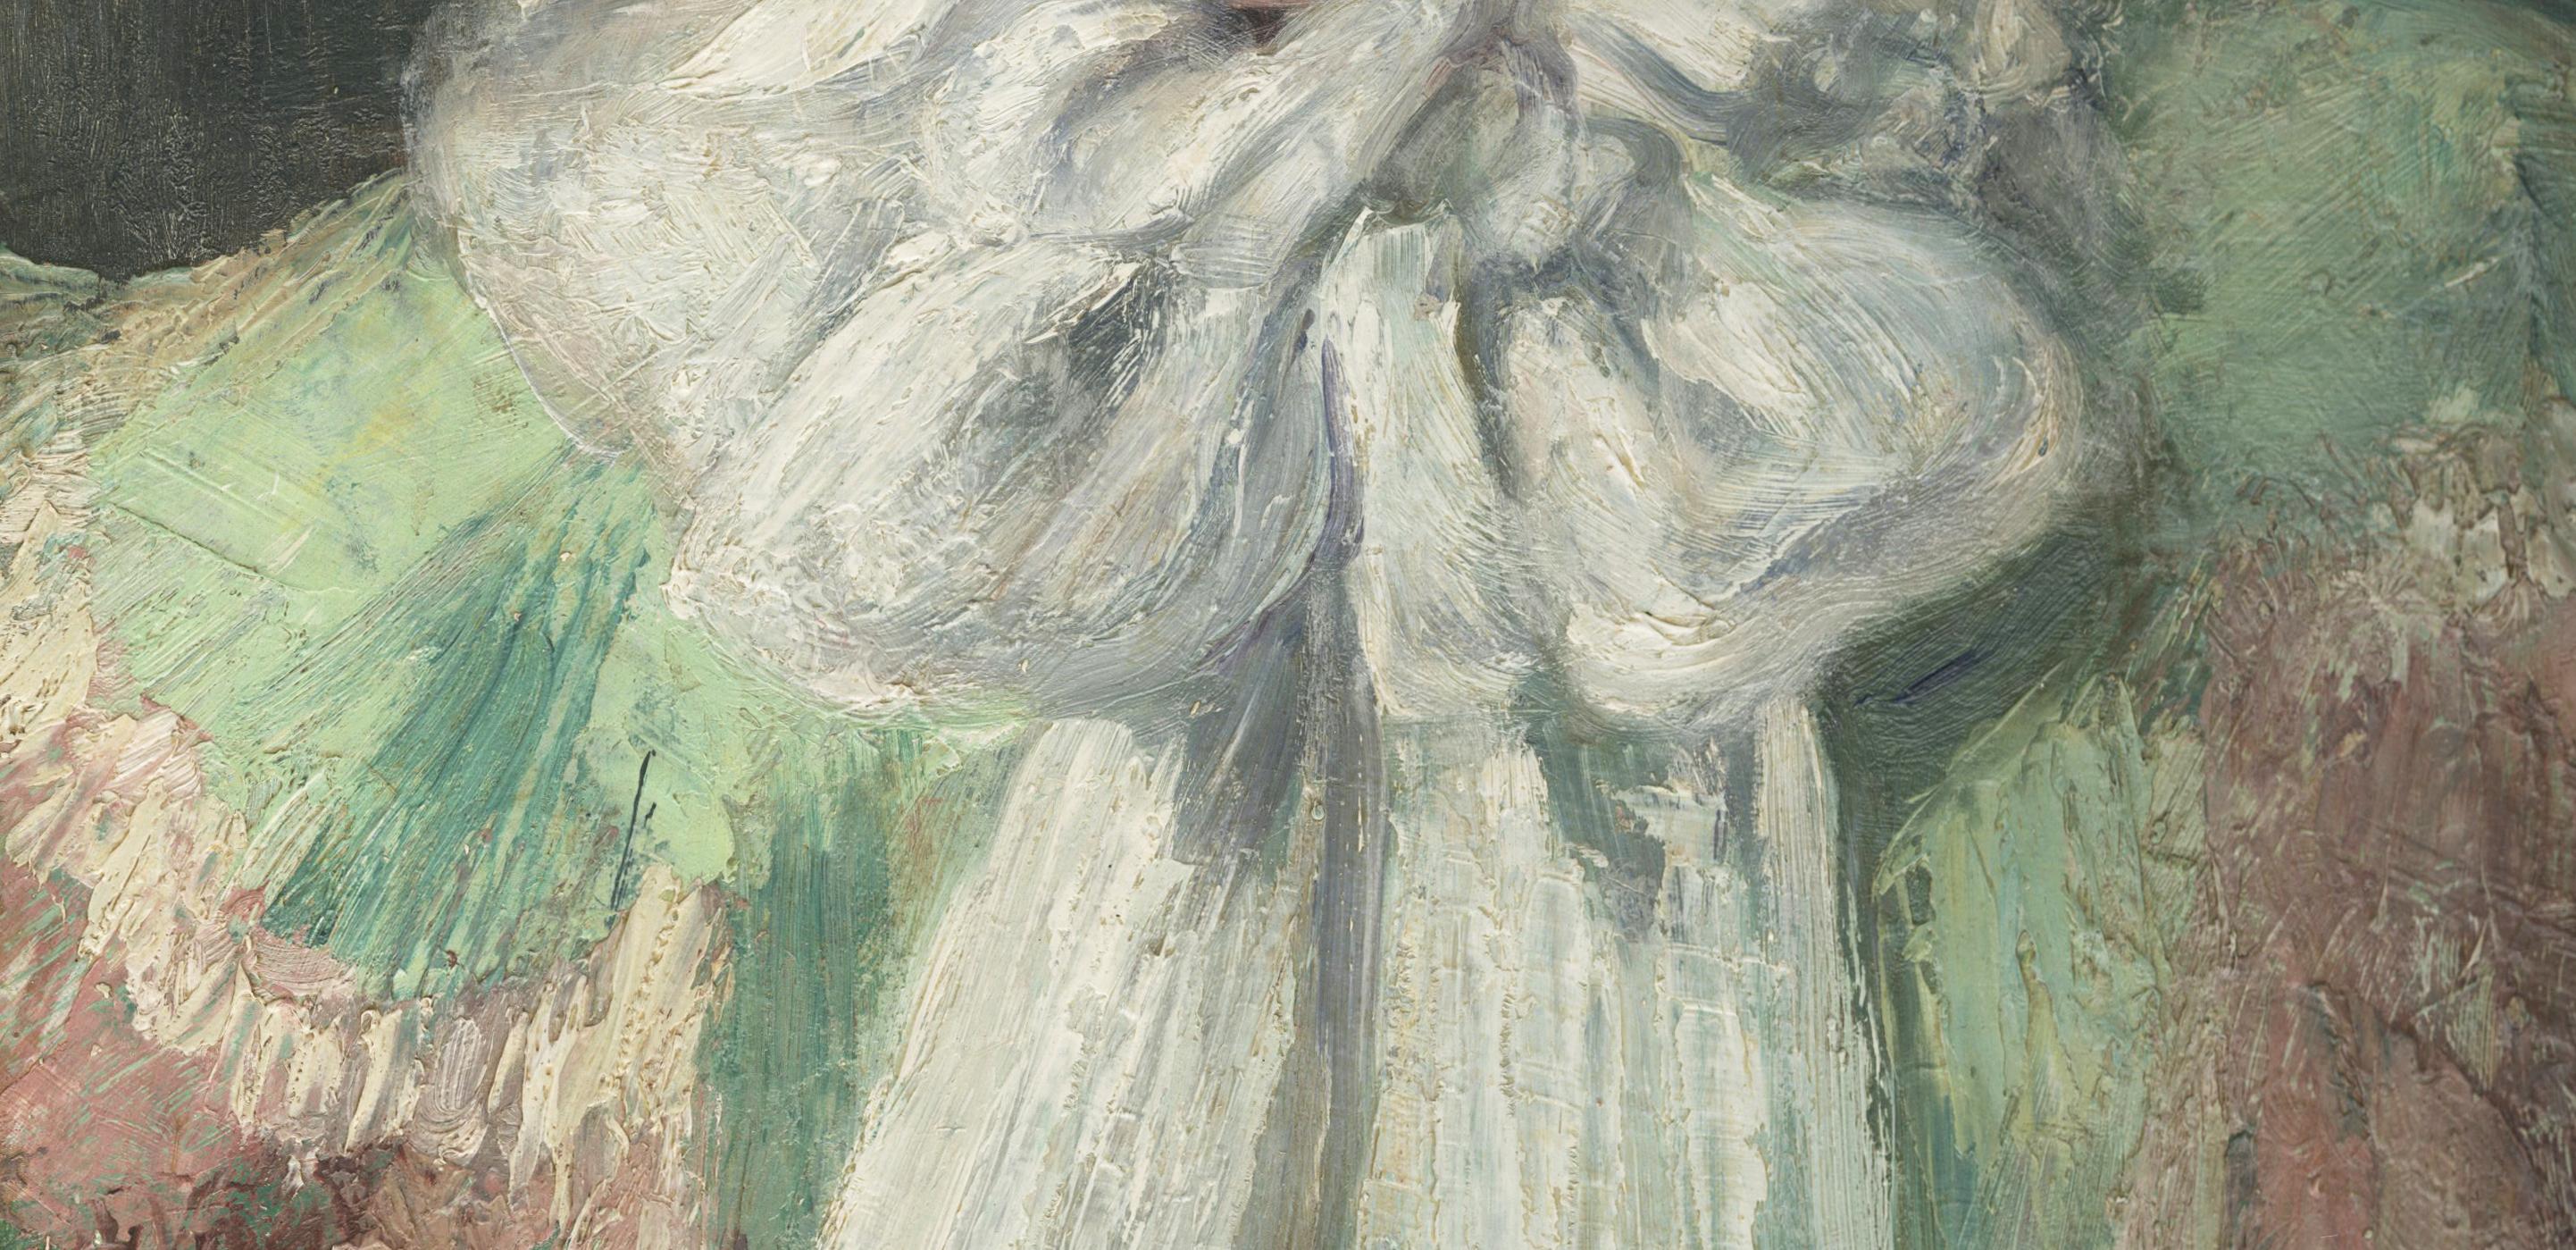 Le foulard blanc (autoportrait de l'artiste)
Huile sur carton, 1894
Signé et daté en bas à gauche : E M Heller  94 (voir image)
Encadré dans un cadre de style Whistler à feuilles de métal, Cadre : 23 x 18-1/2 x 1-5/8